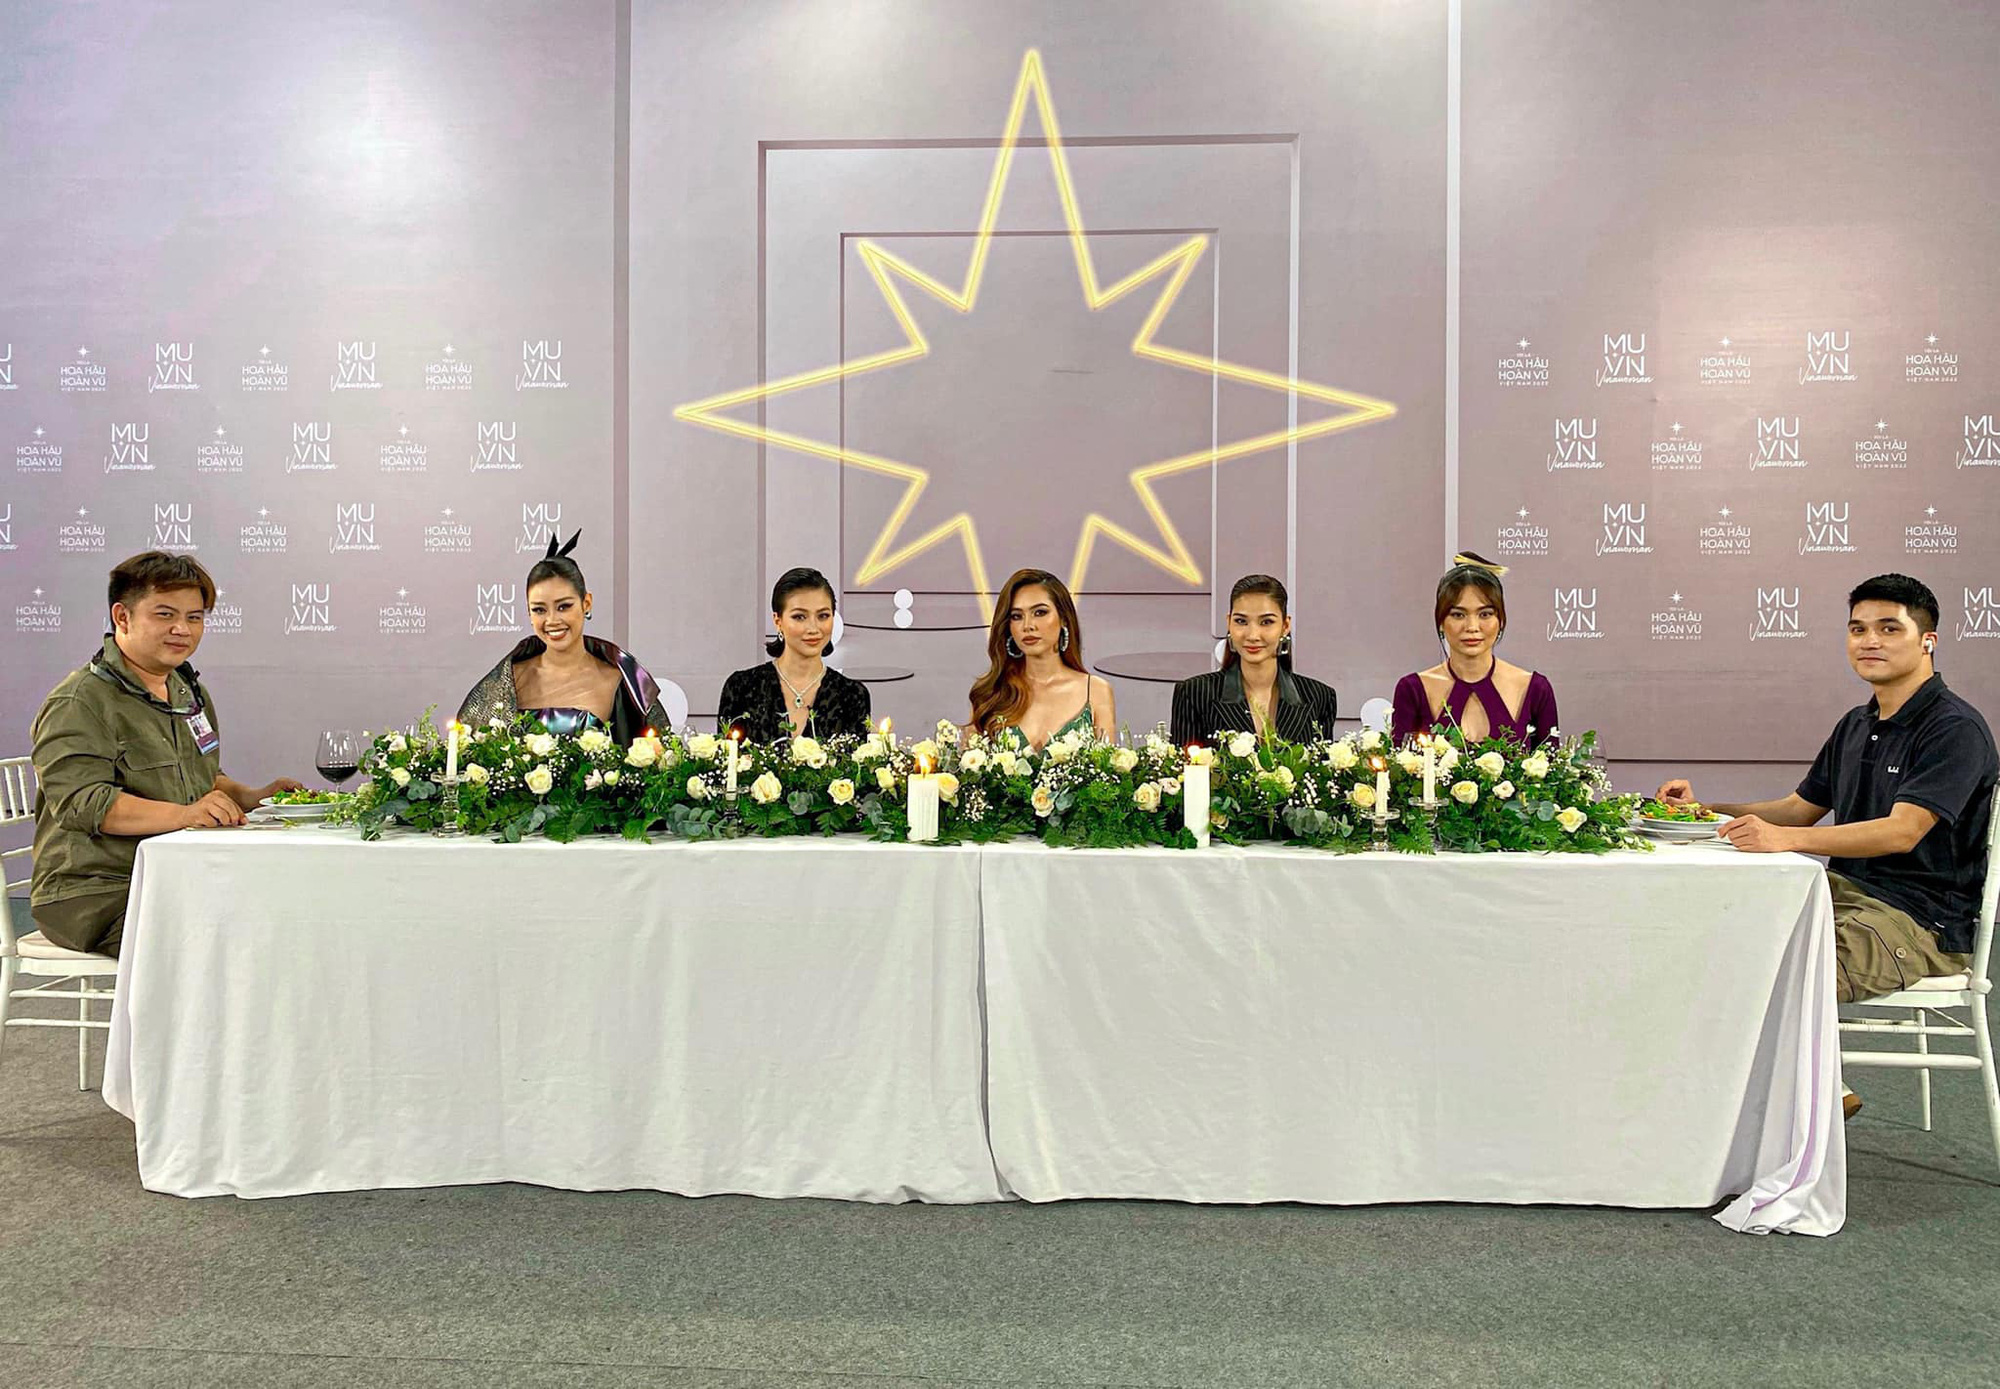 Miss Universe Vietnam tung ảnh 5 nàng Hậu, netizen phấn khích: “Cô Xuân Trang chuẩn bị trừ điểm thanh lịch nè nha!” - Ảnh 1.